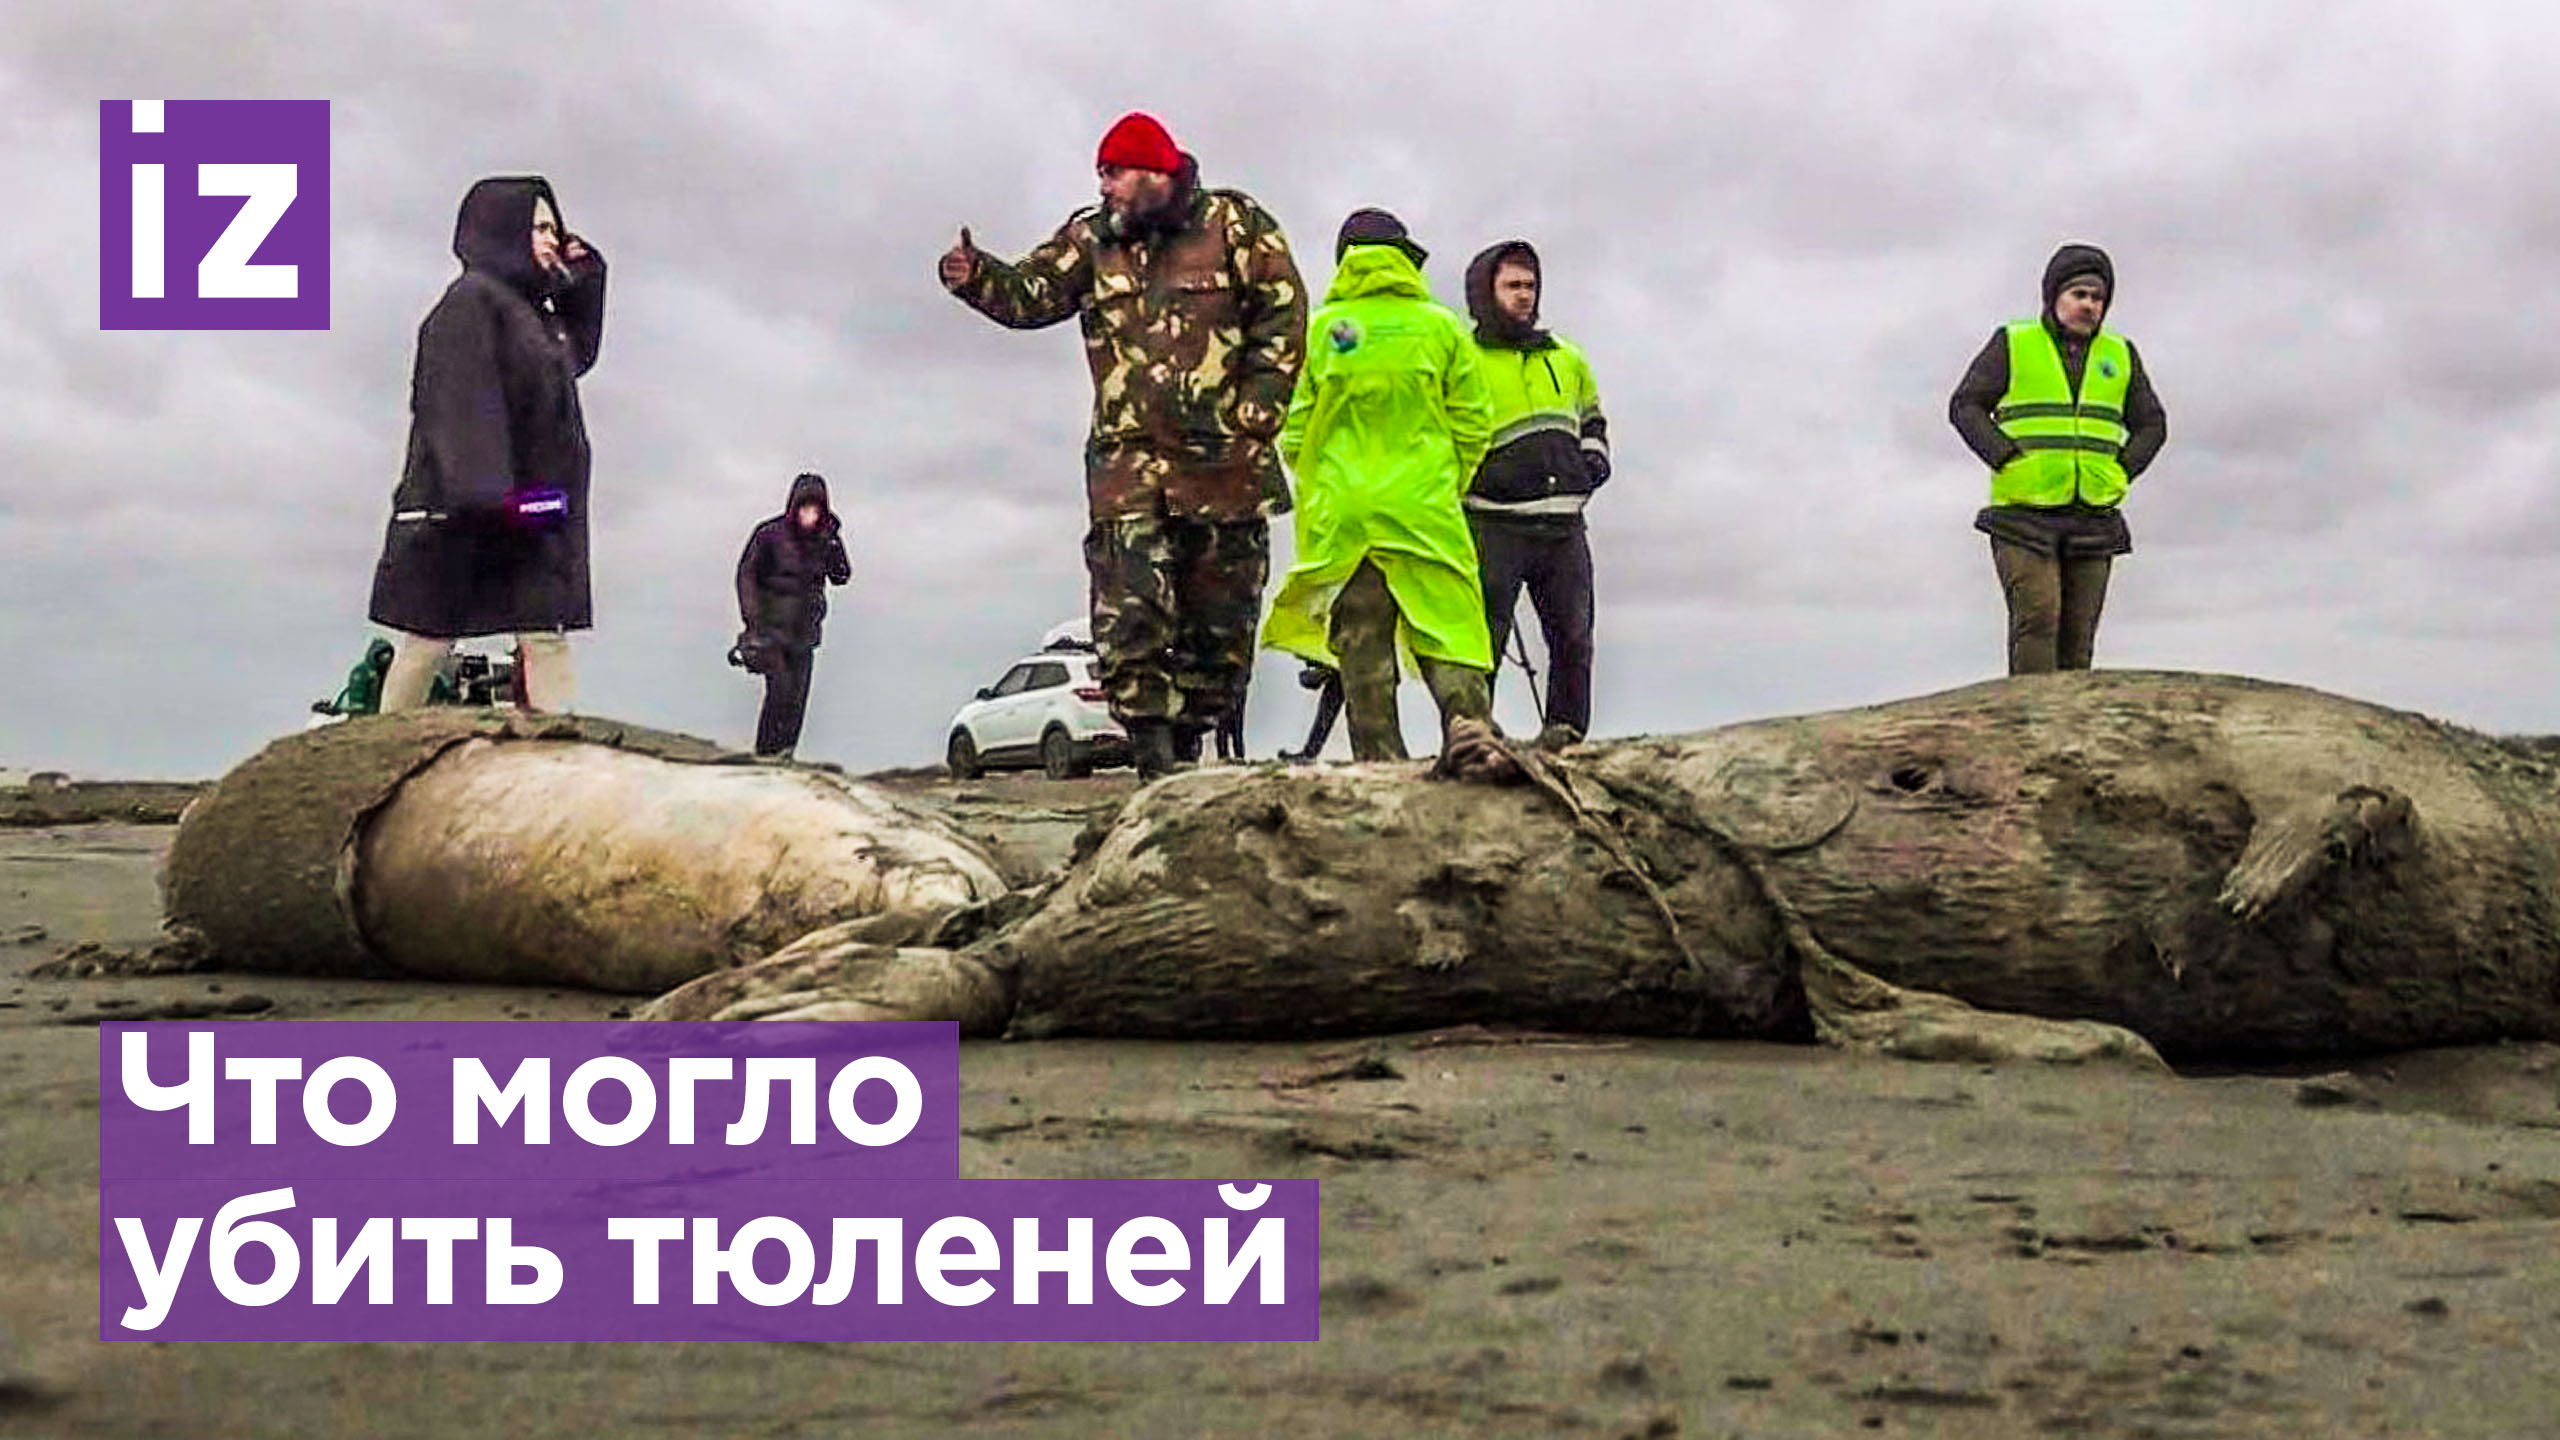 Слезы природы: названа возможная причина гибели тюленей в Дагестане / Известия